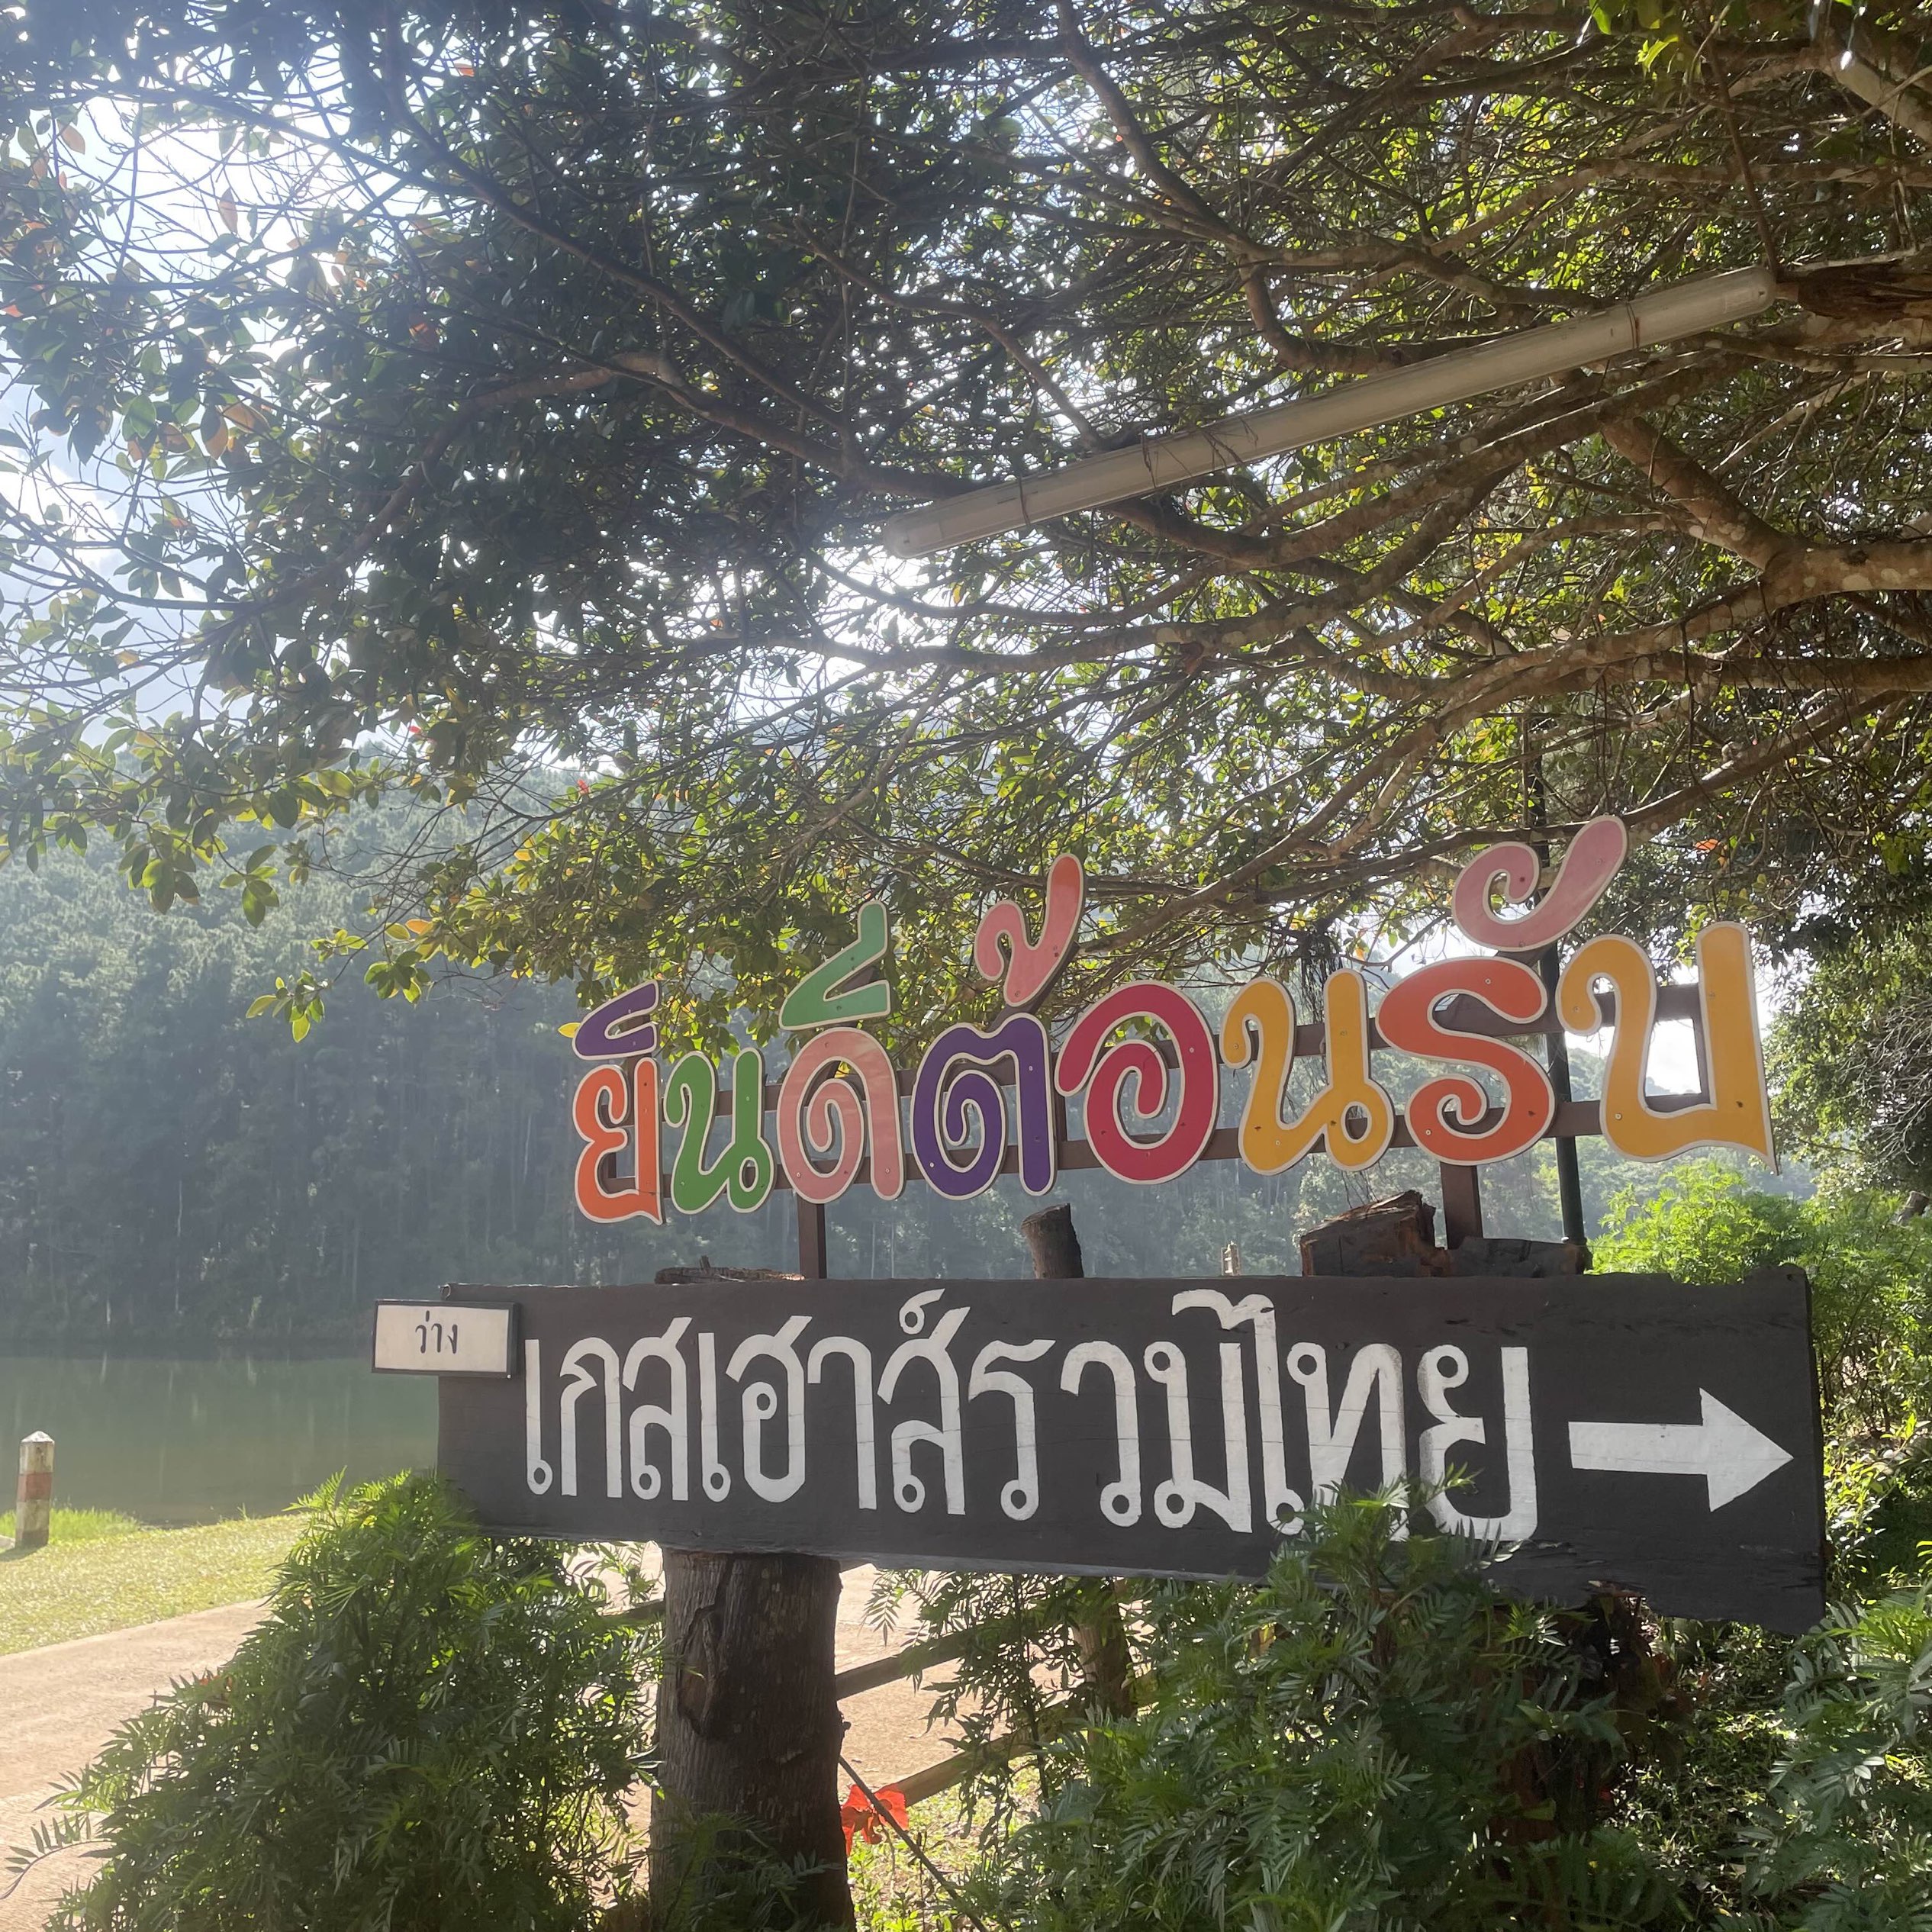 包括泰国旅馆 Pang Ung...睡得很好,有热水。